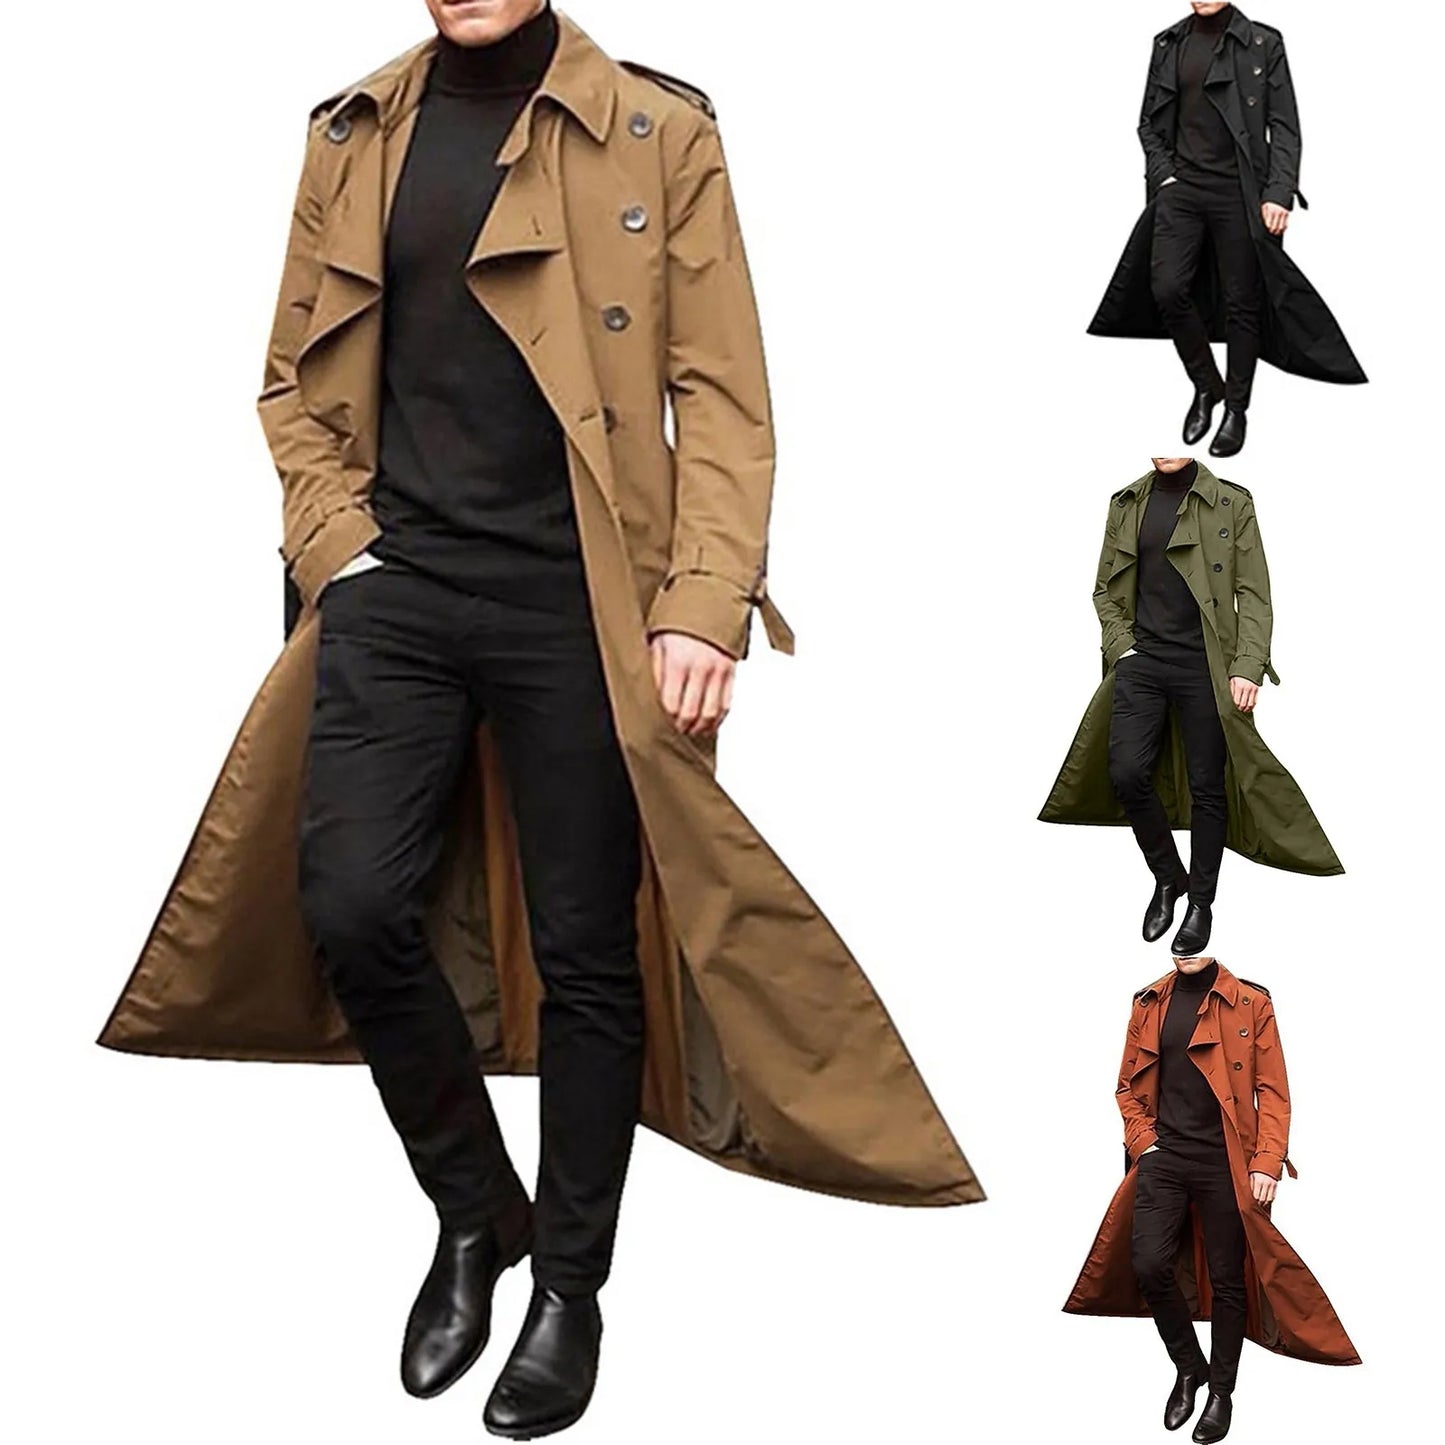 Wool Overcoat Long Sleeve Trench Coats Jacket